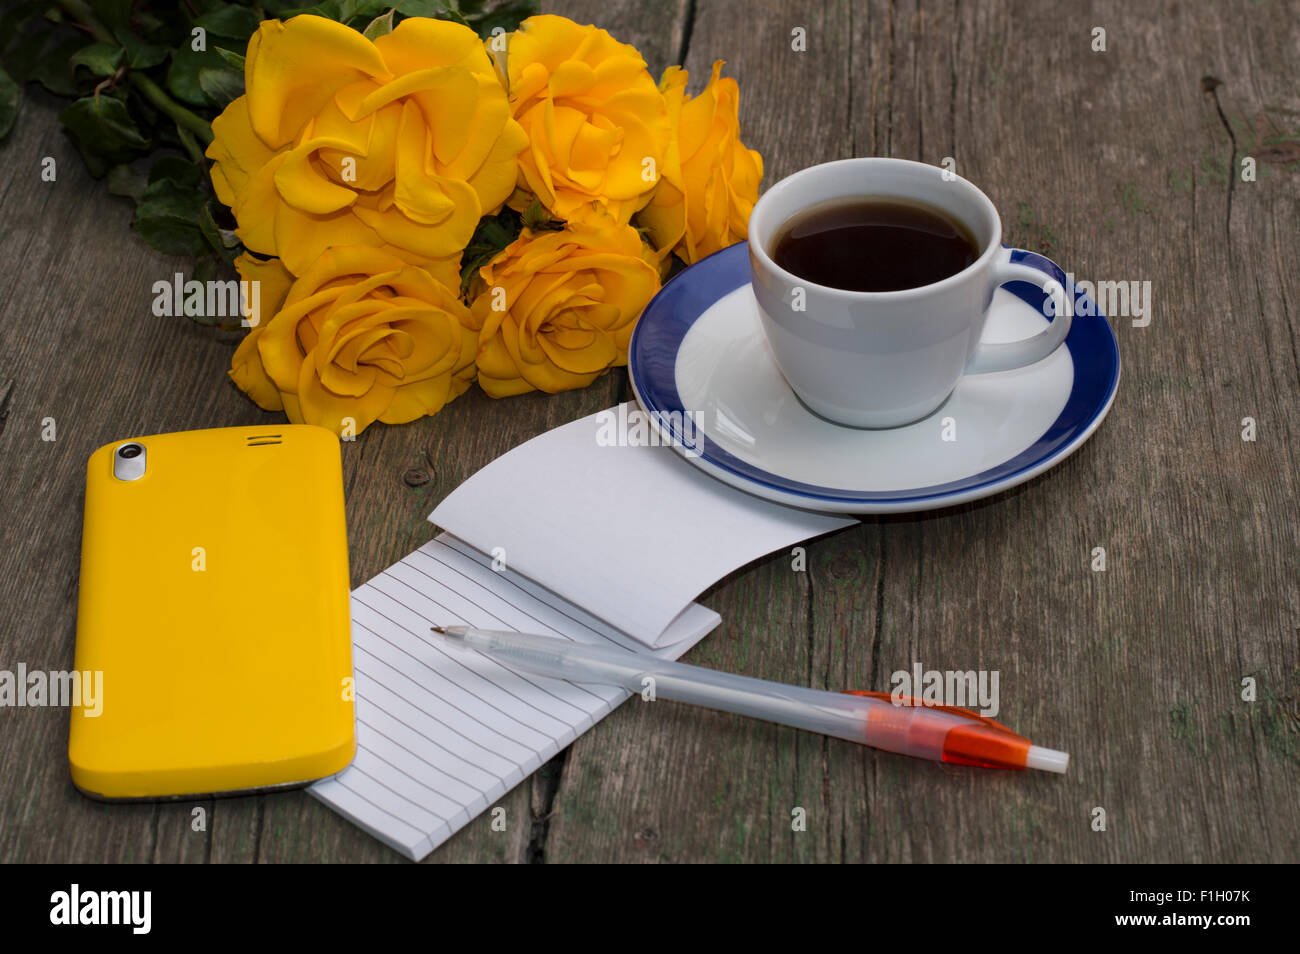 Des roses jaunes, ordinateur portable, café et téléphone jaune Banque D'Images